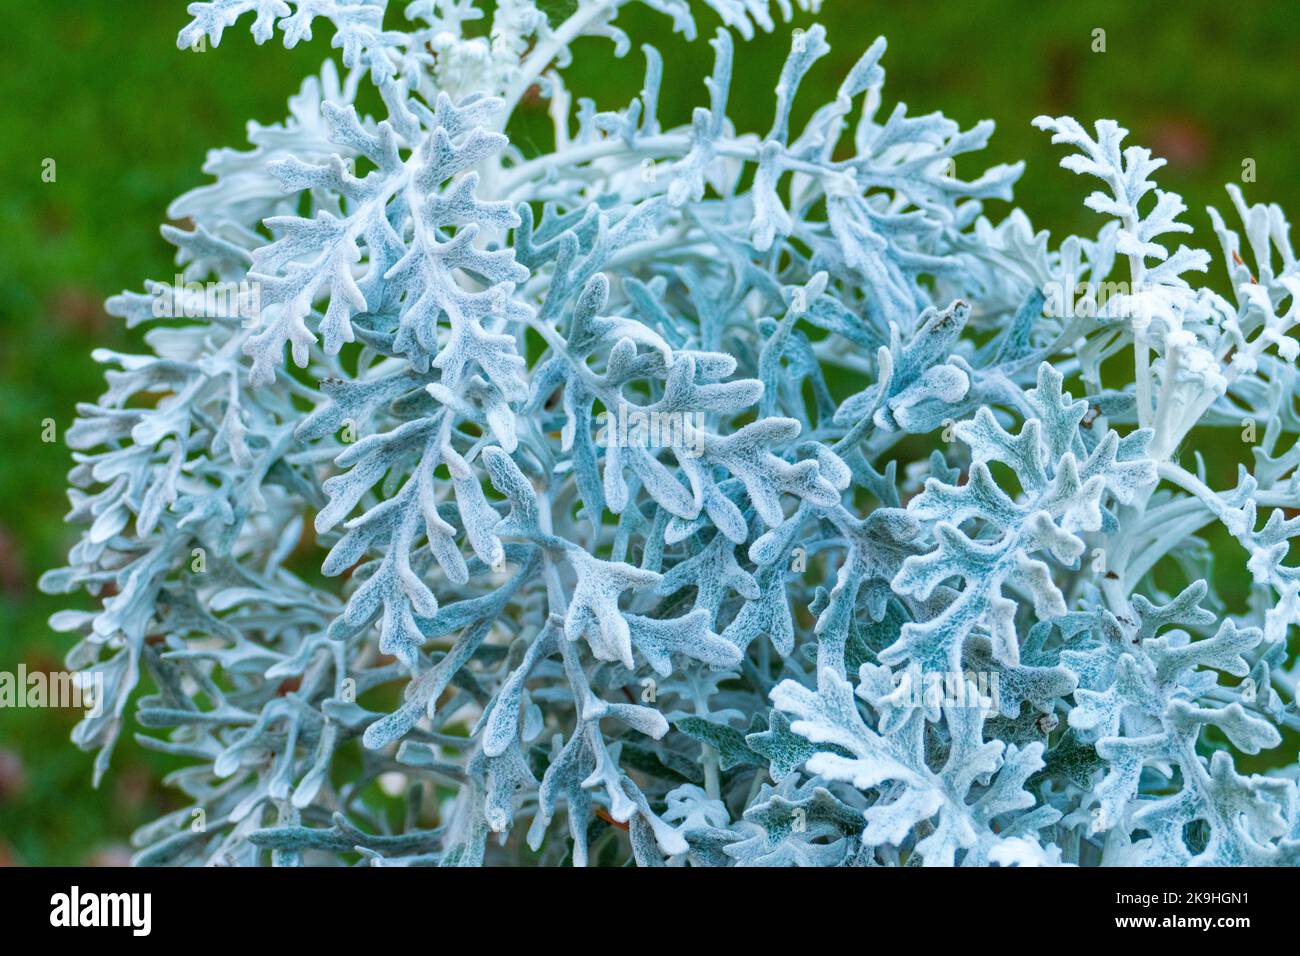 Invierno Silberblatt mit geweihartigen silbernen Blättern Foto de stock